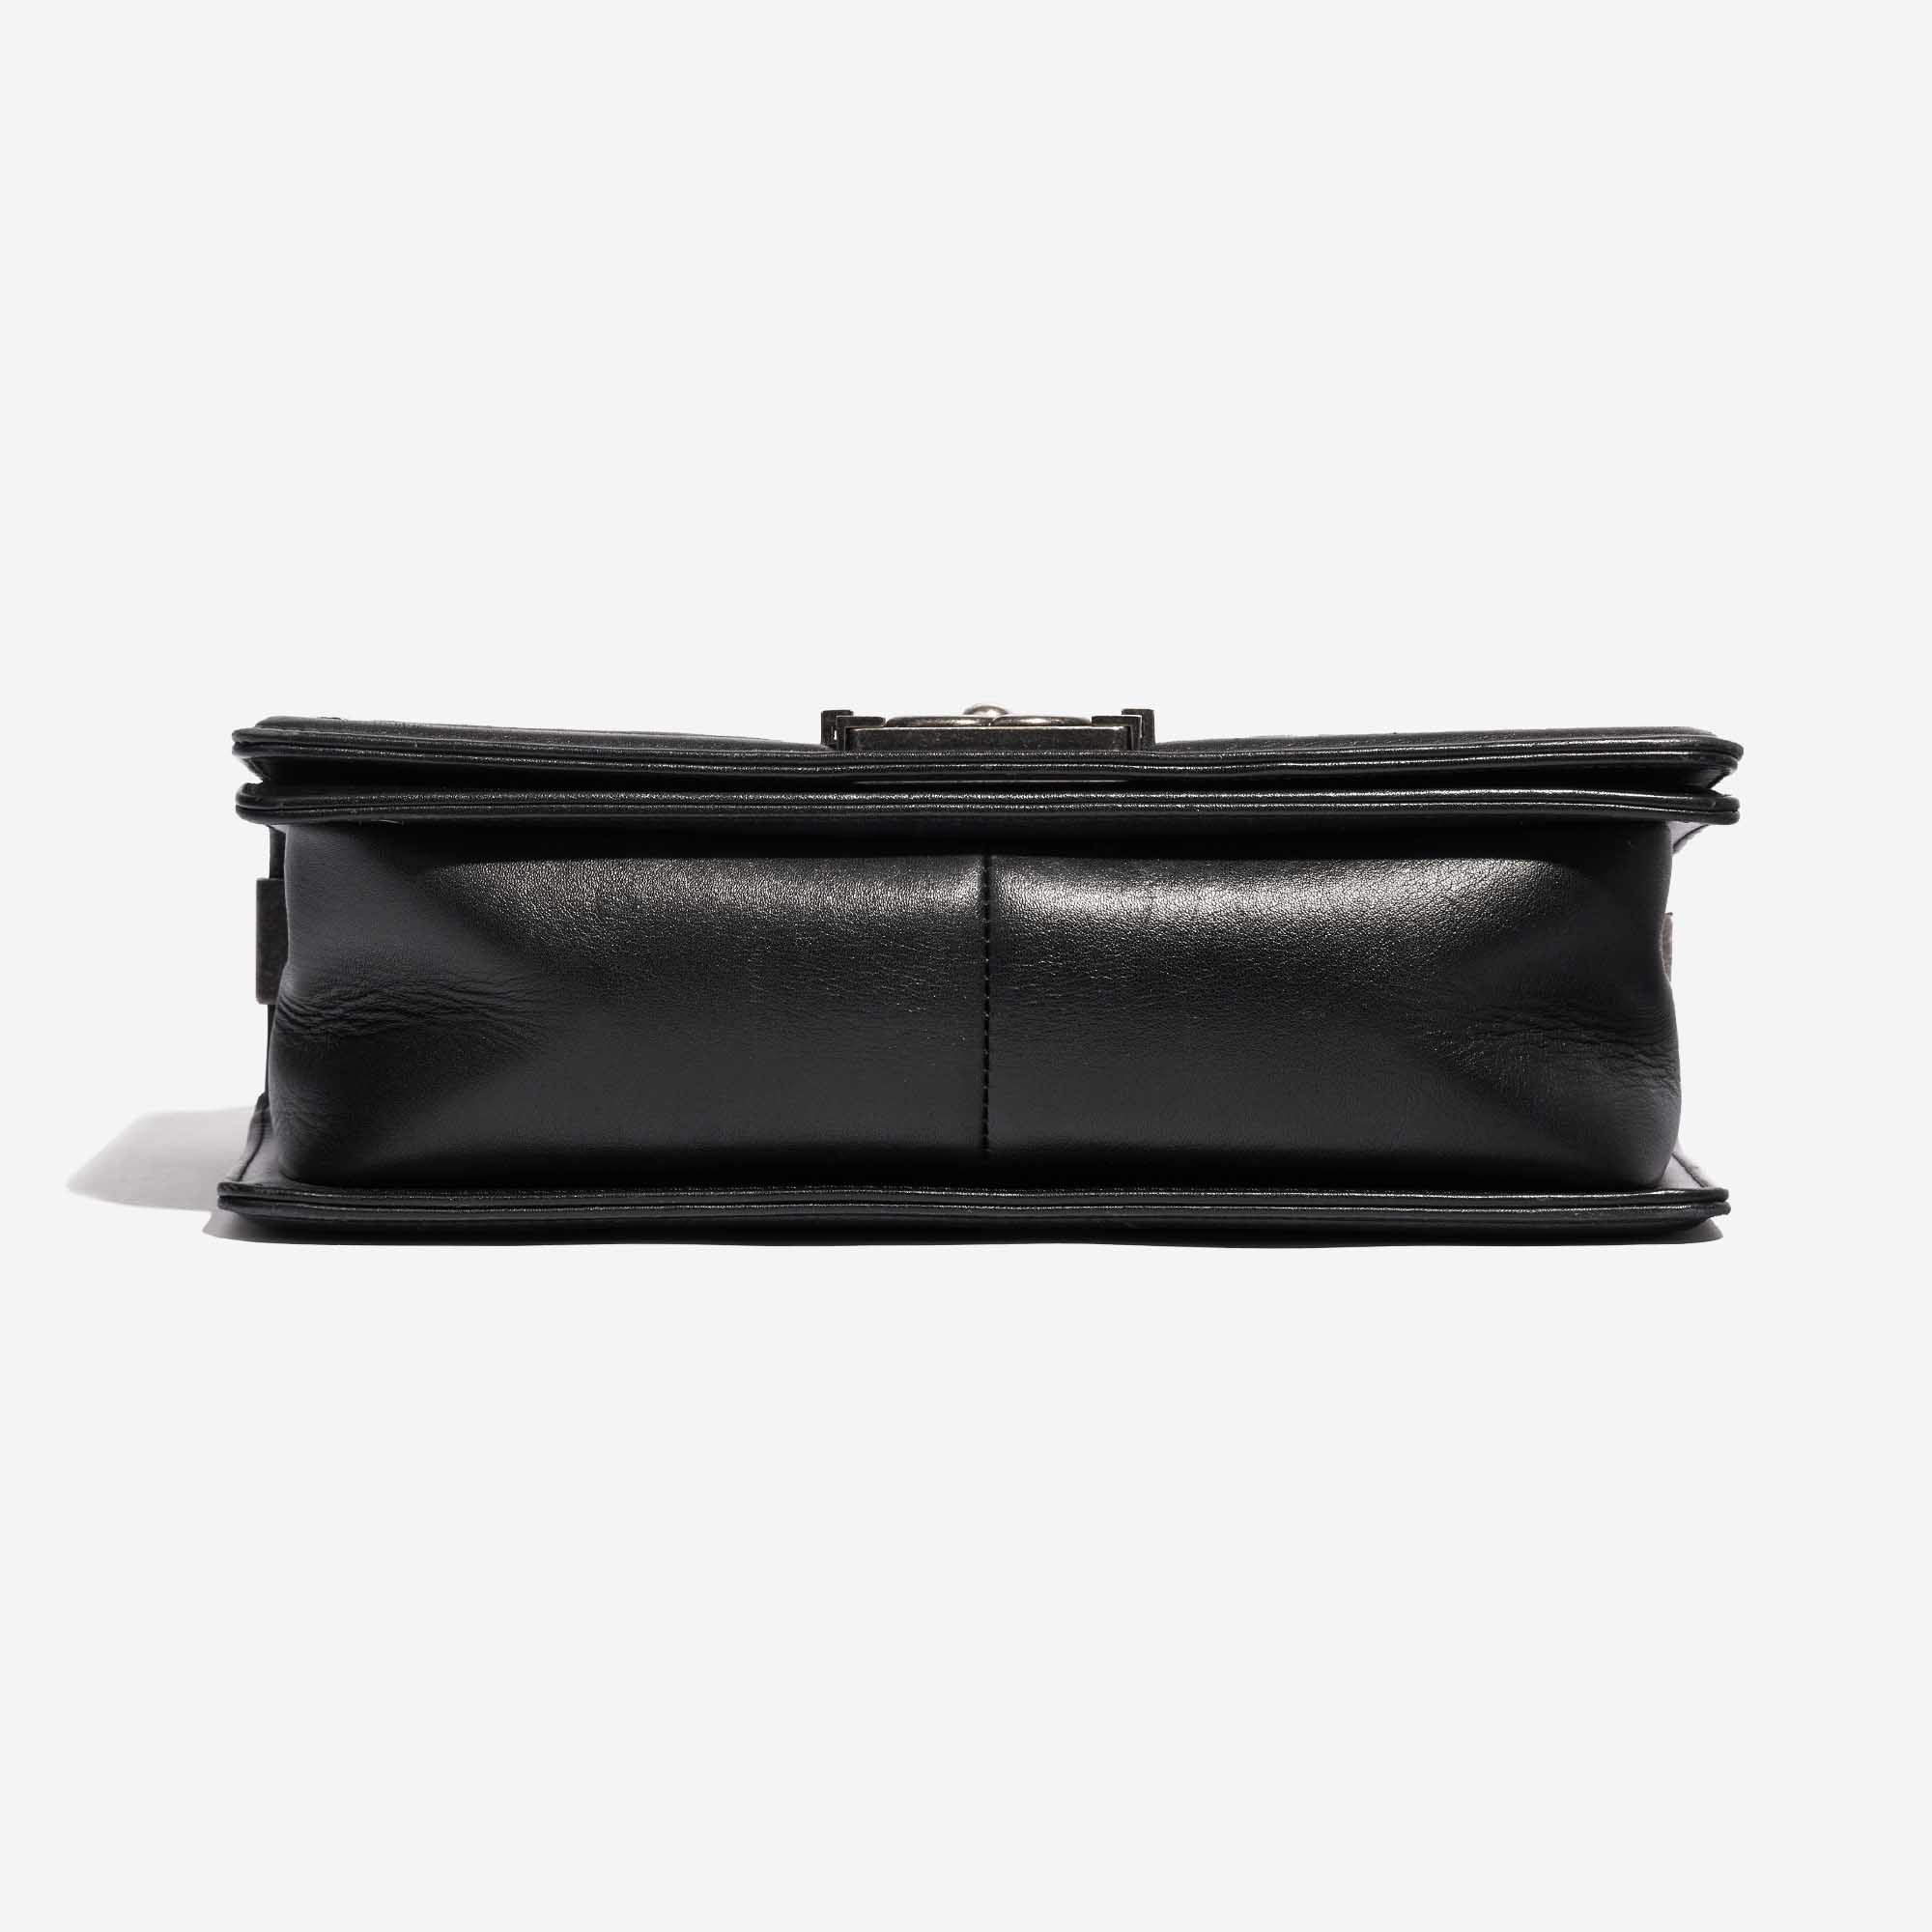 Gebrauchte Chanel Tasche Boy Old Medium Lammleder Schwarz / Weiß Schwarz, Weißer Boden | Verkaufen Sie Ihre Designer-Tasche auf Saclab.com